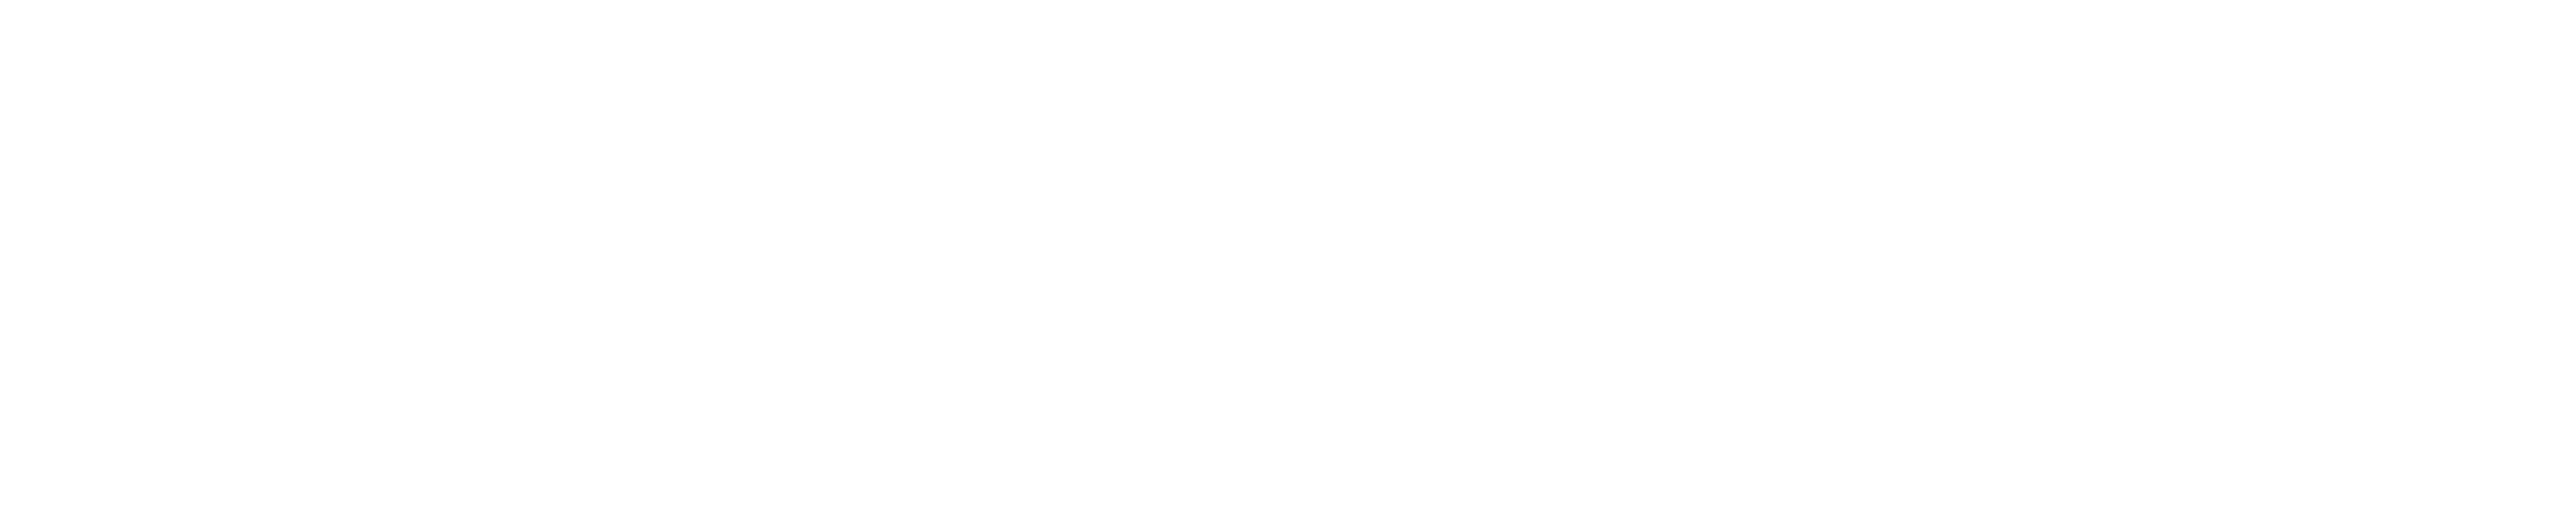 Logotipo de Bootstrap